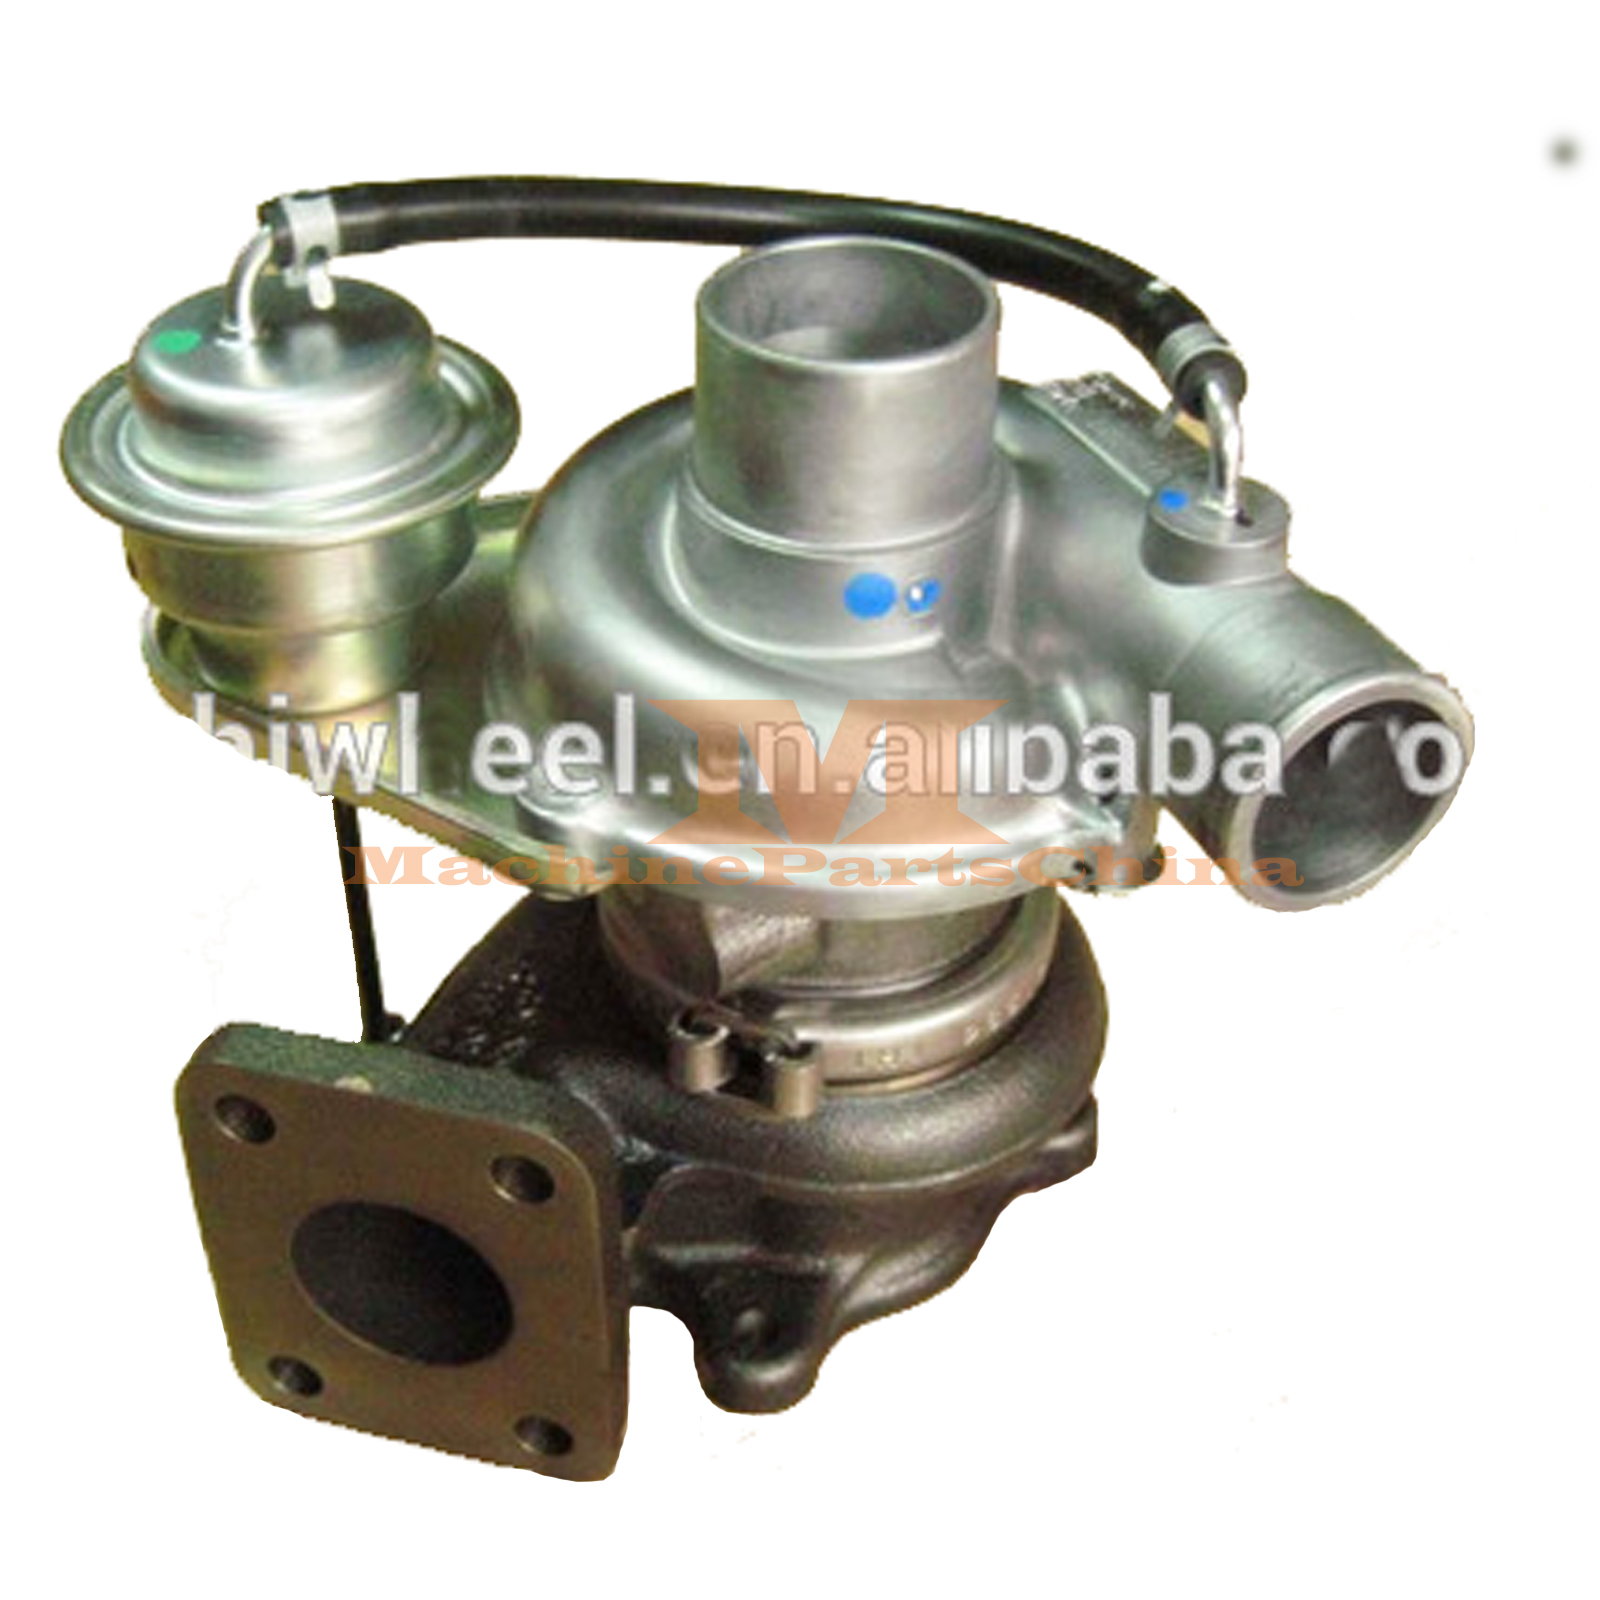 Turbocharger 1E013-17014 for Bobcat S160 S185 with Kubota V2003T Engine